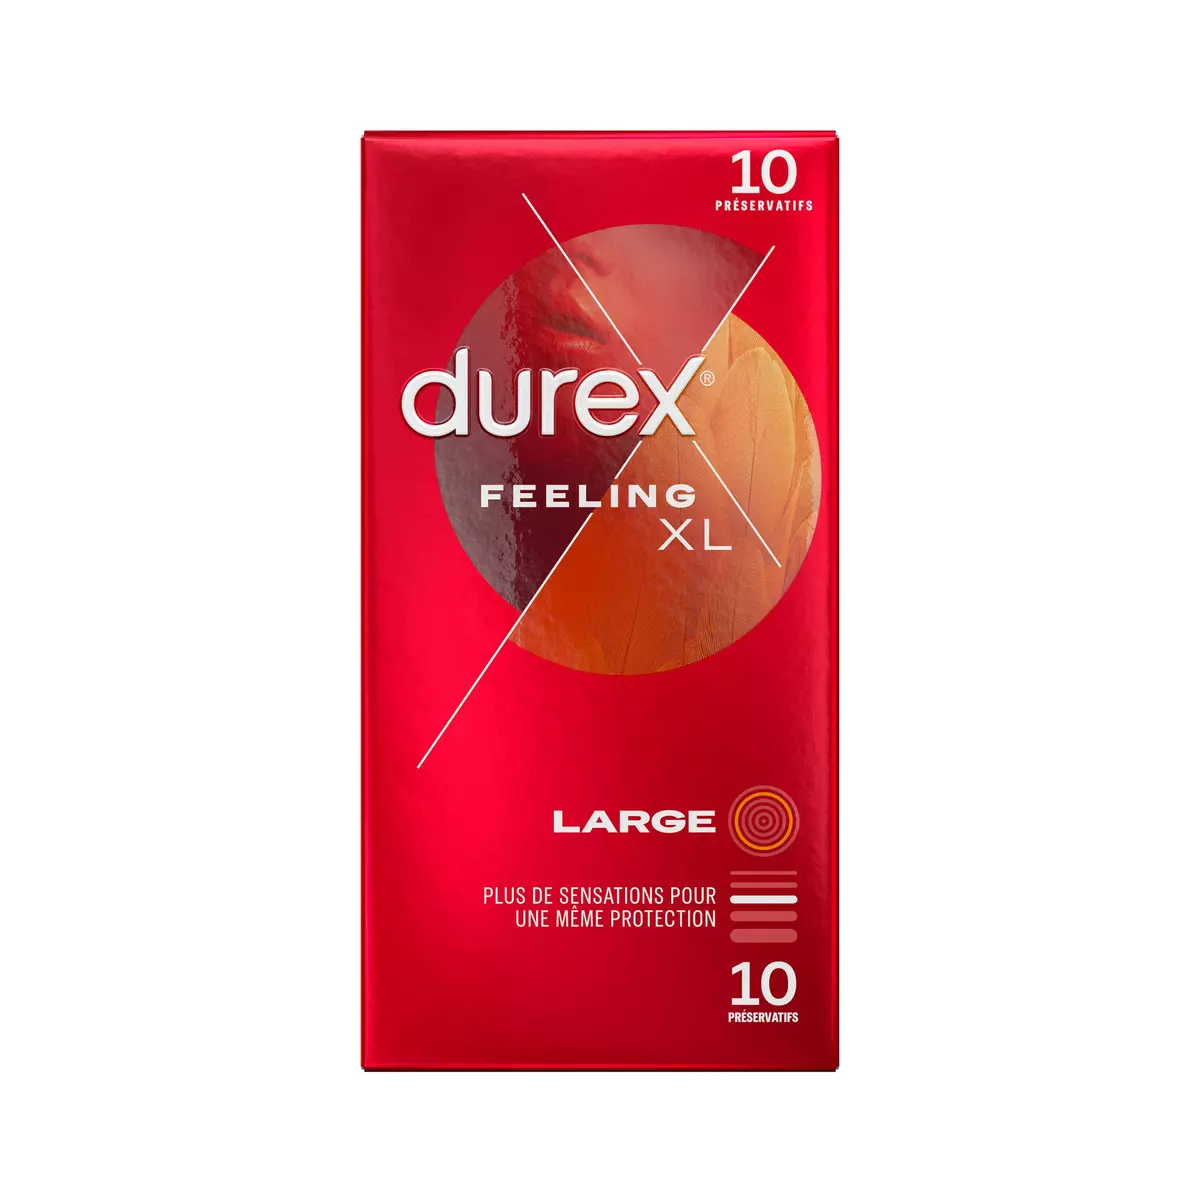 DUREX Feeling XL préservatif large 10 préservatifs